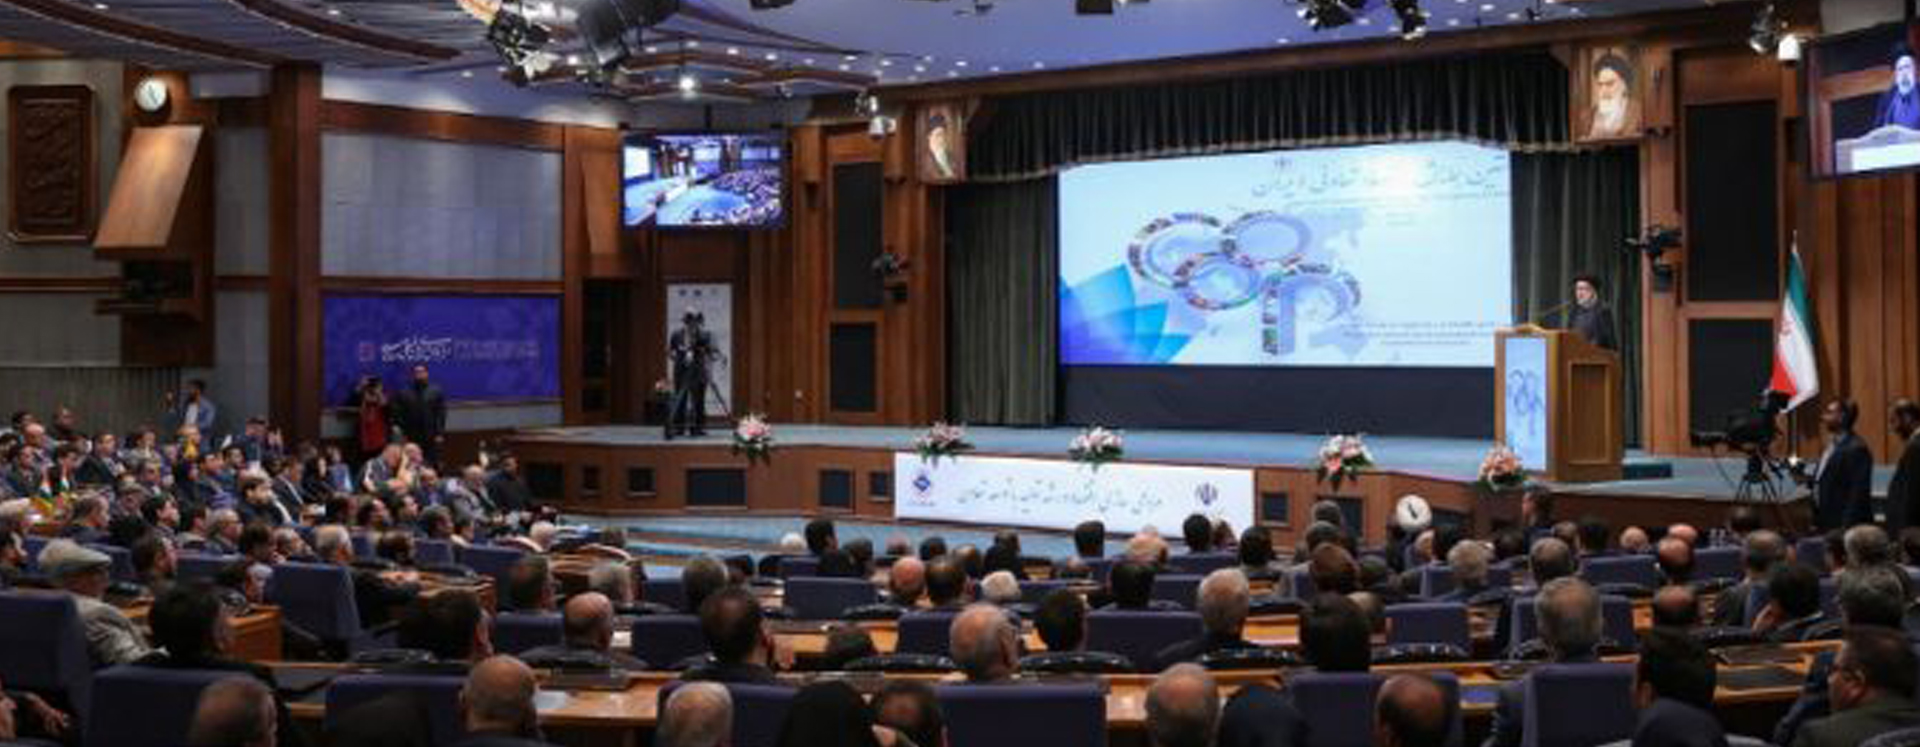 رئیس جمهور در همایش اقتصاد تعاونی ایران : 